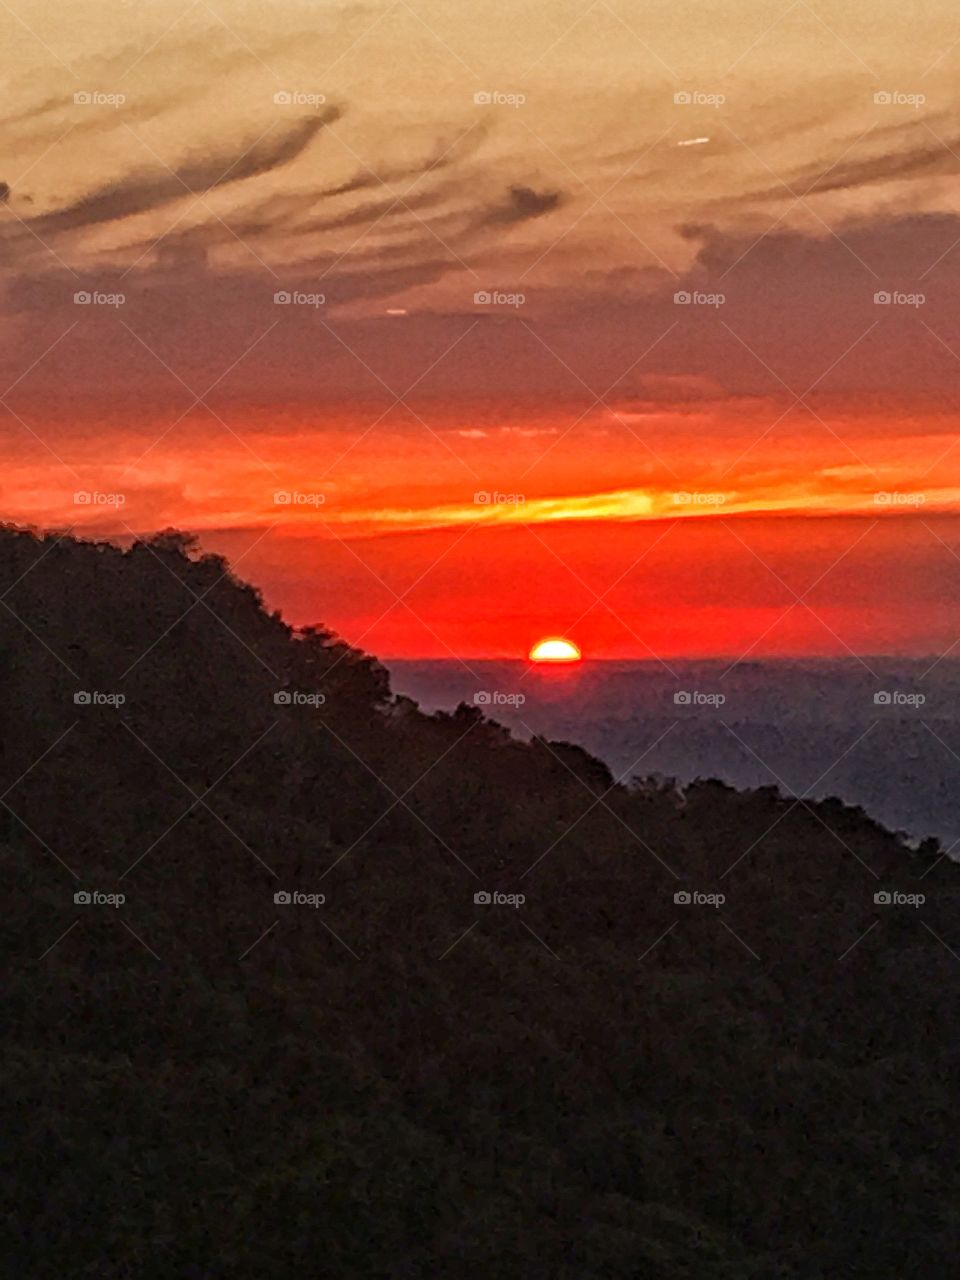 Sunset on the horizon